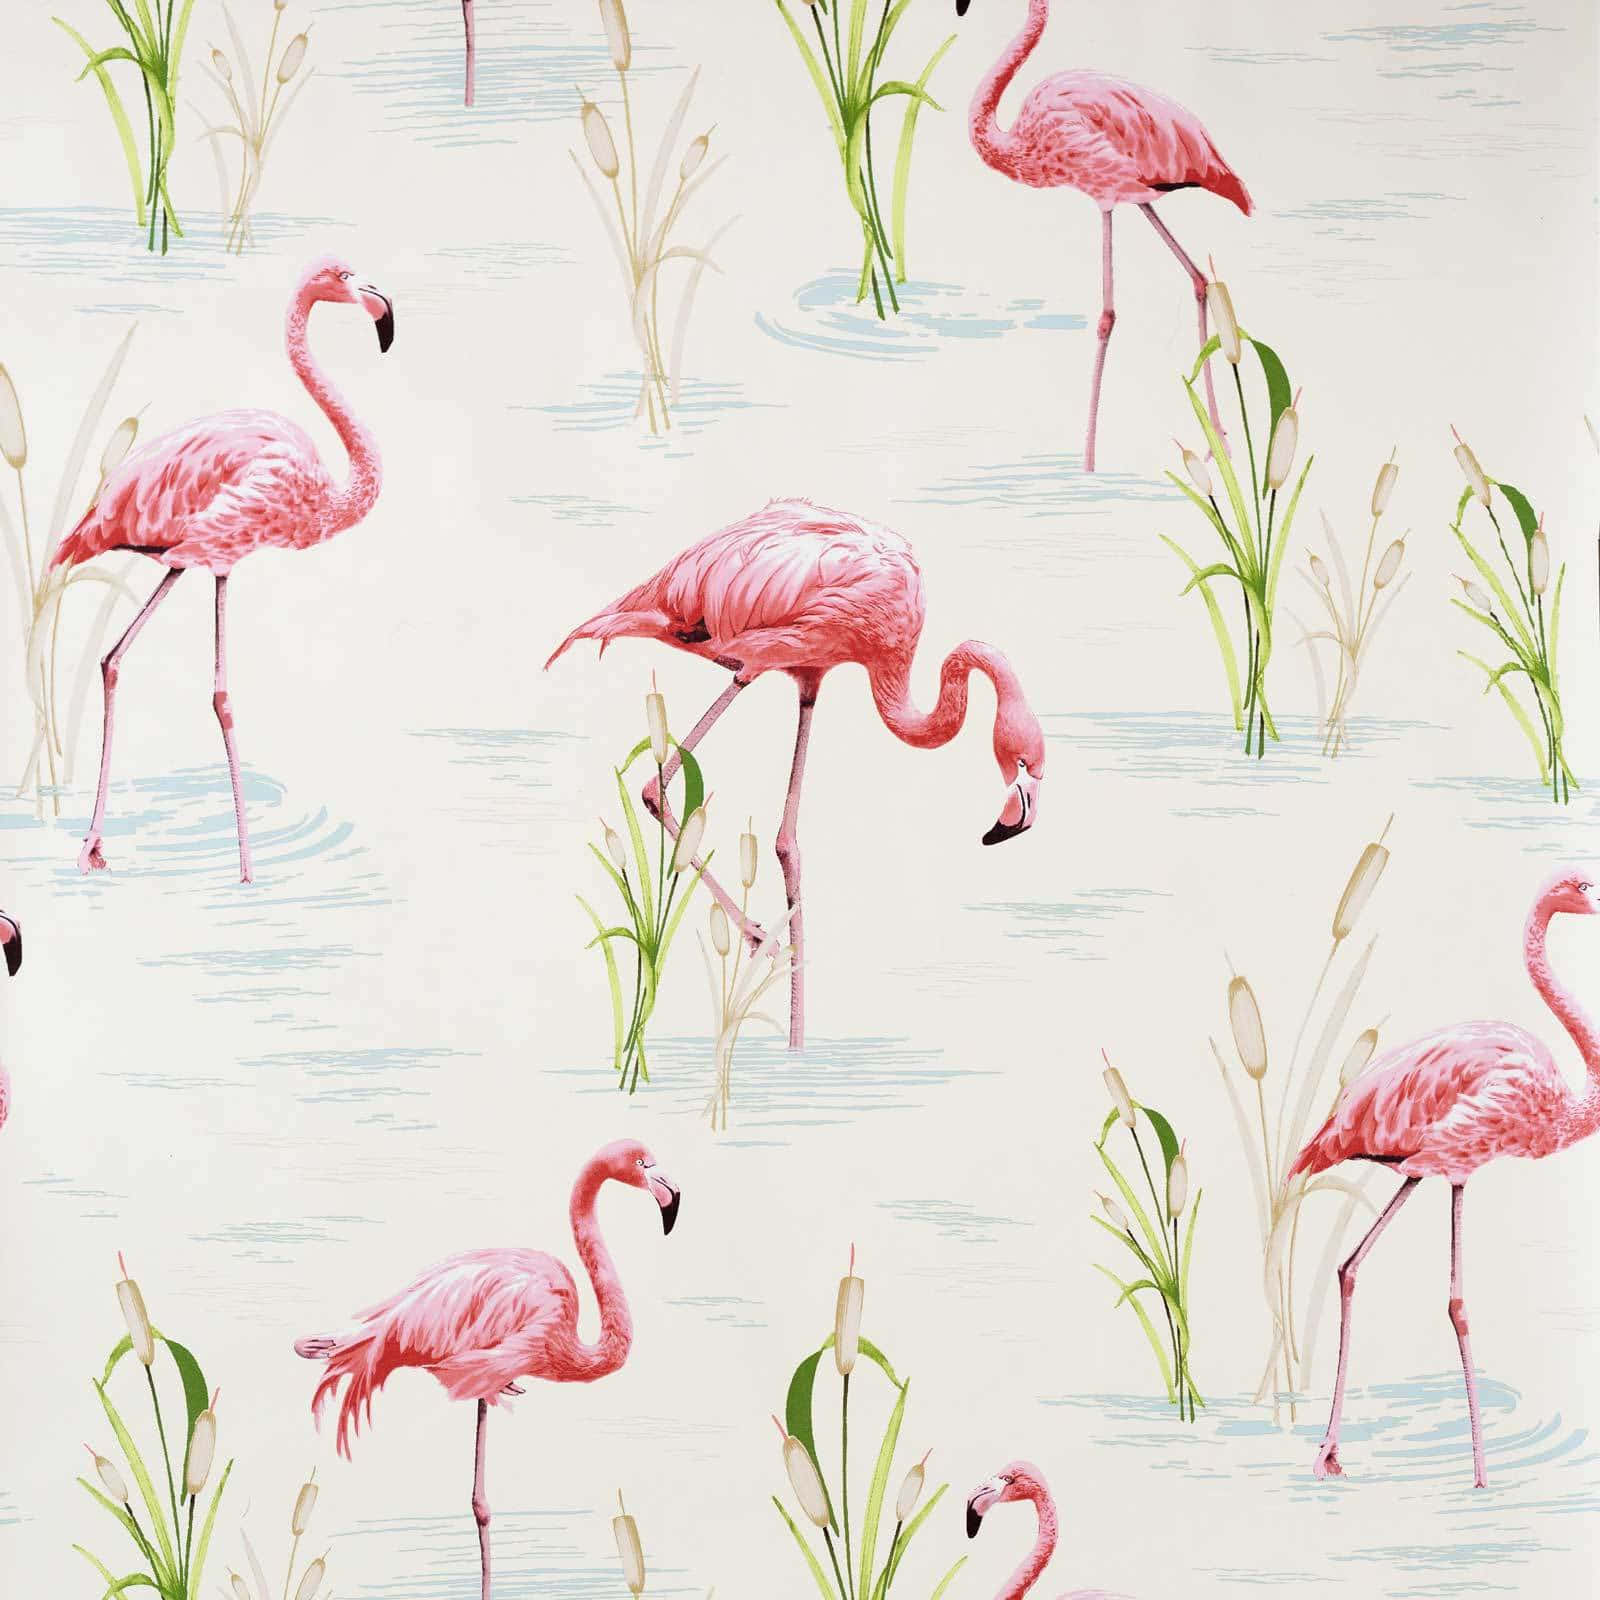 Flock of Pink Flamingos on Lake Shore Wallpaper